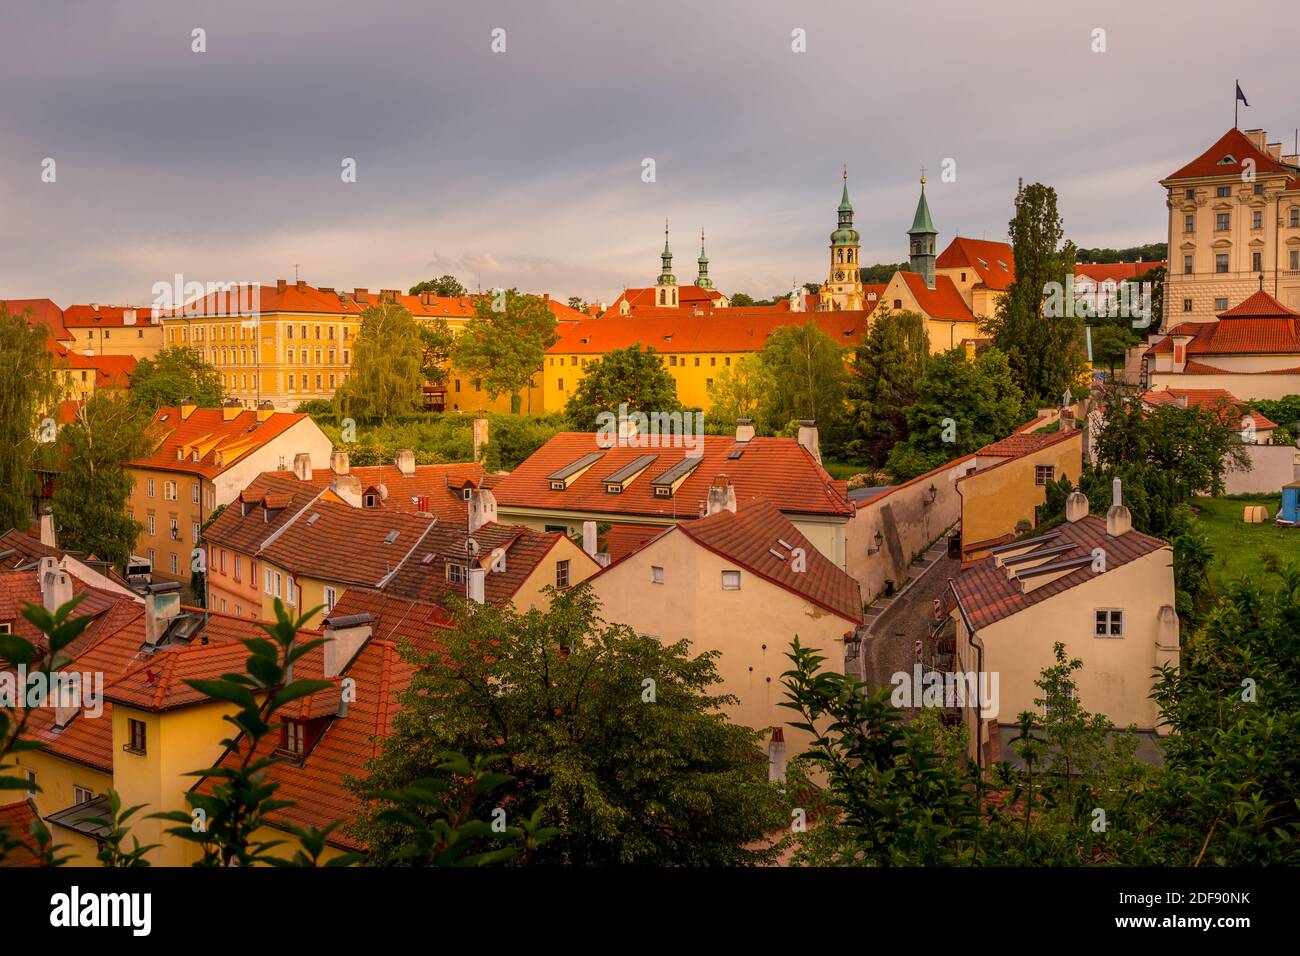 Das historische malerische Viertel Neue Welt in der Nähe der Prager Burg bei Sonnenuntergang. UNESCO-Denkmal, Tschechische Republik Stockfoto